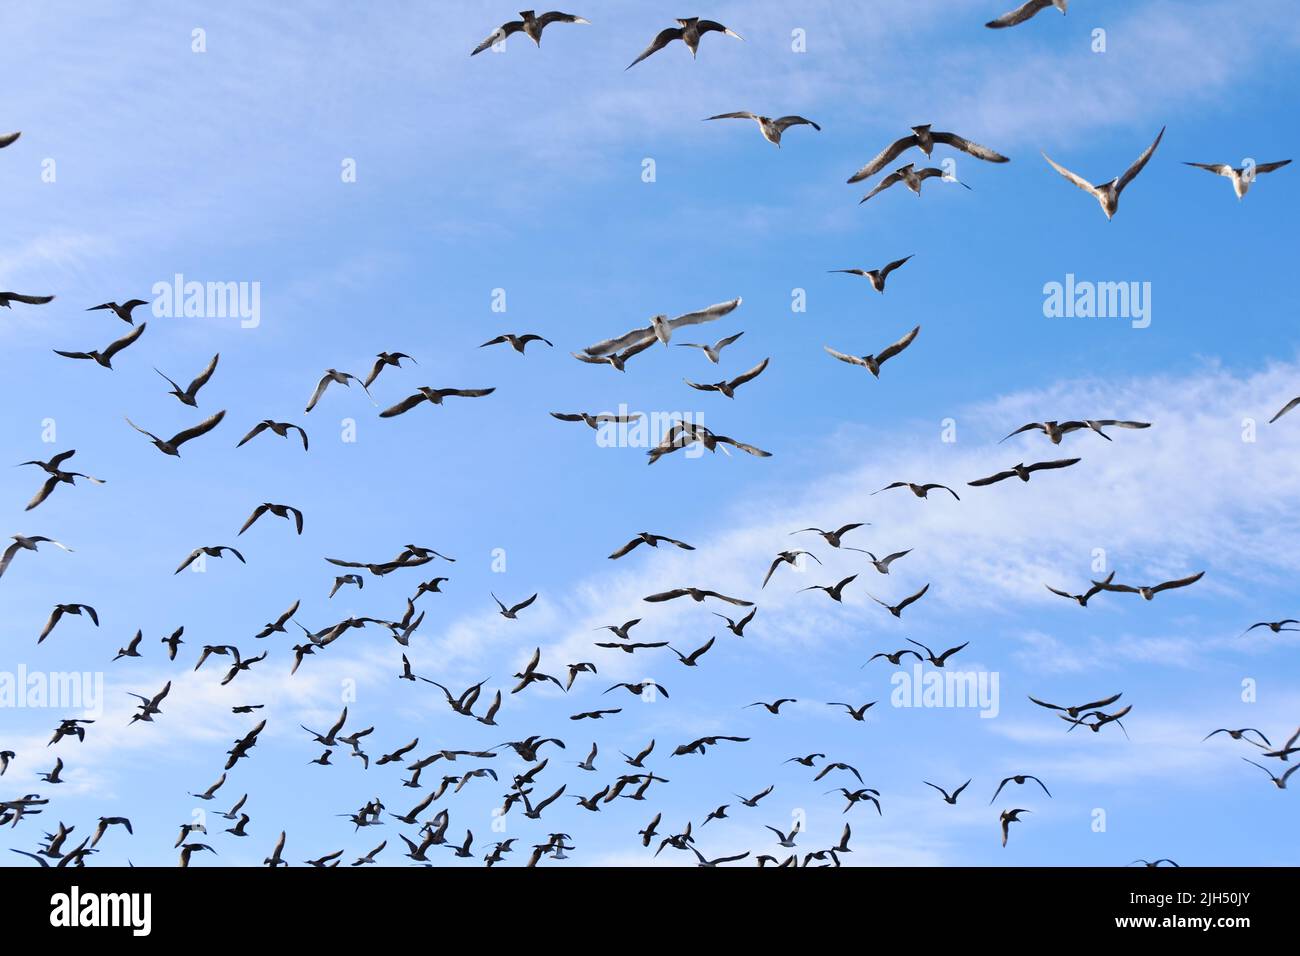 Gran grupo de aves gaviotas volando contra el cielo azul Foto de stock